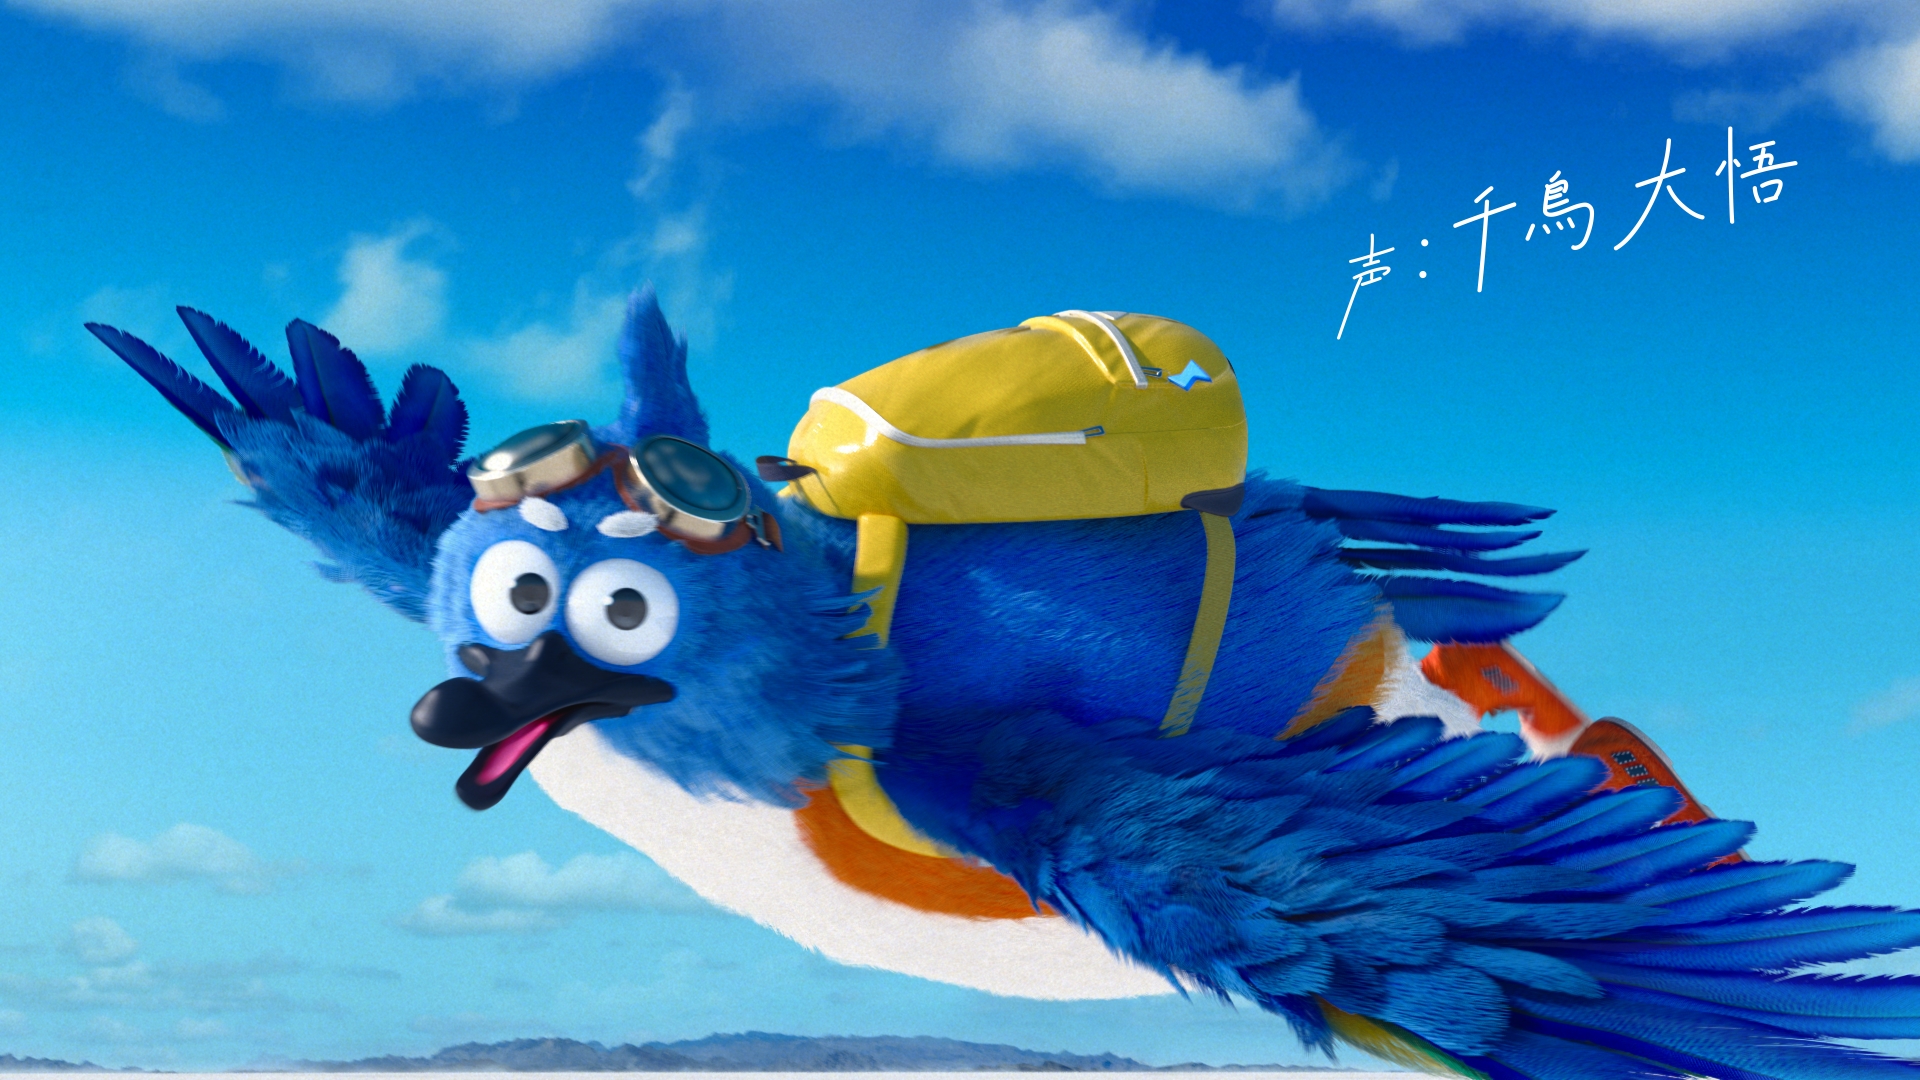 幸せの青い鳥 タフトン カナバングラフィックス 公式サイト